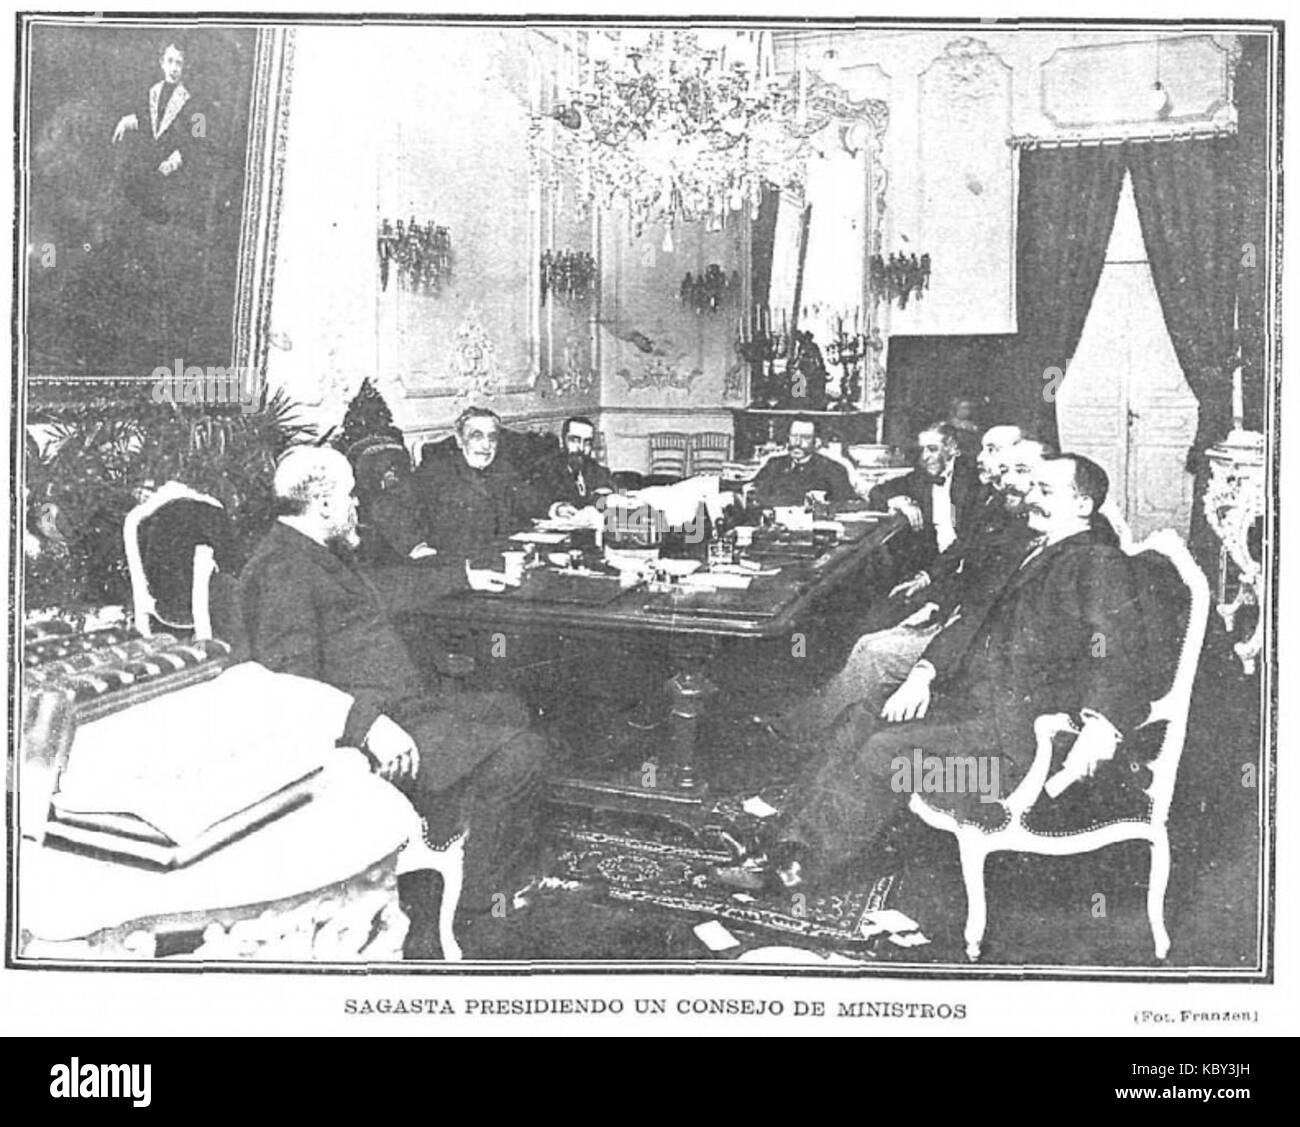 Sagasta presidiendo un consejo de ministros, de Franzen Foto de stock